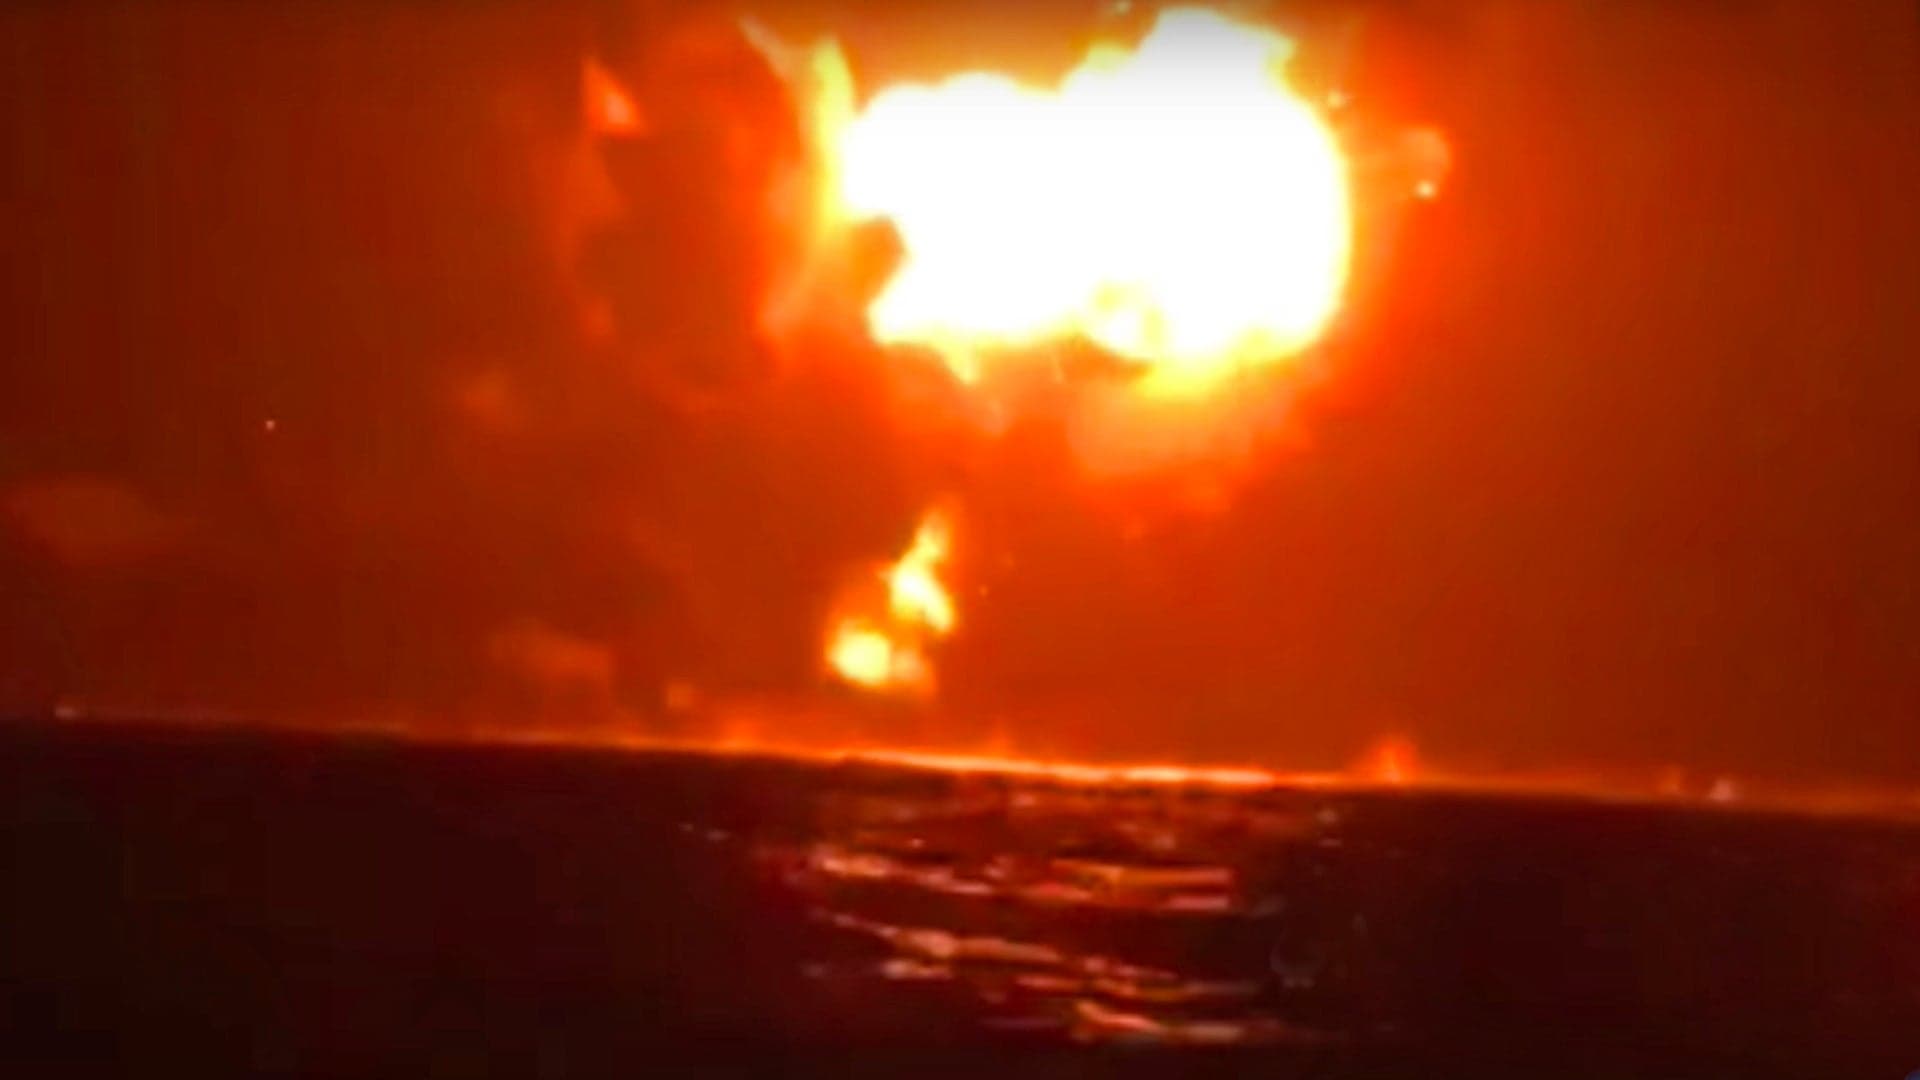 HSV-2 Swift Destroyed Off Yemeni Coast By Anti-Ship Missile